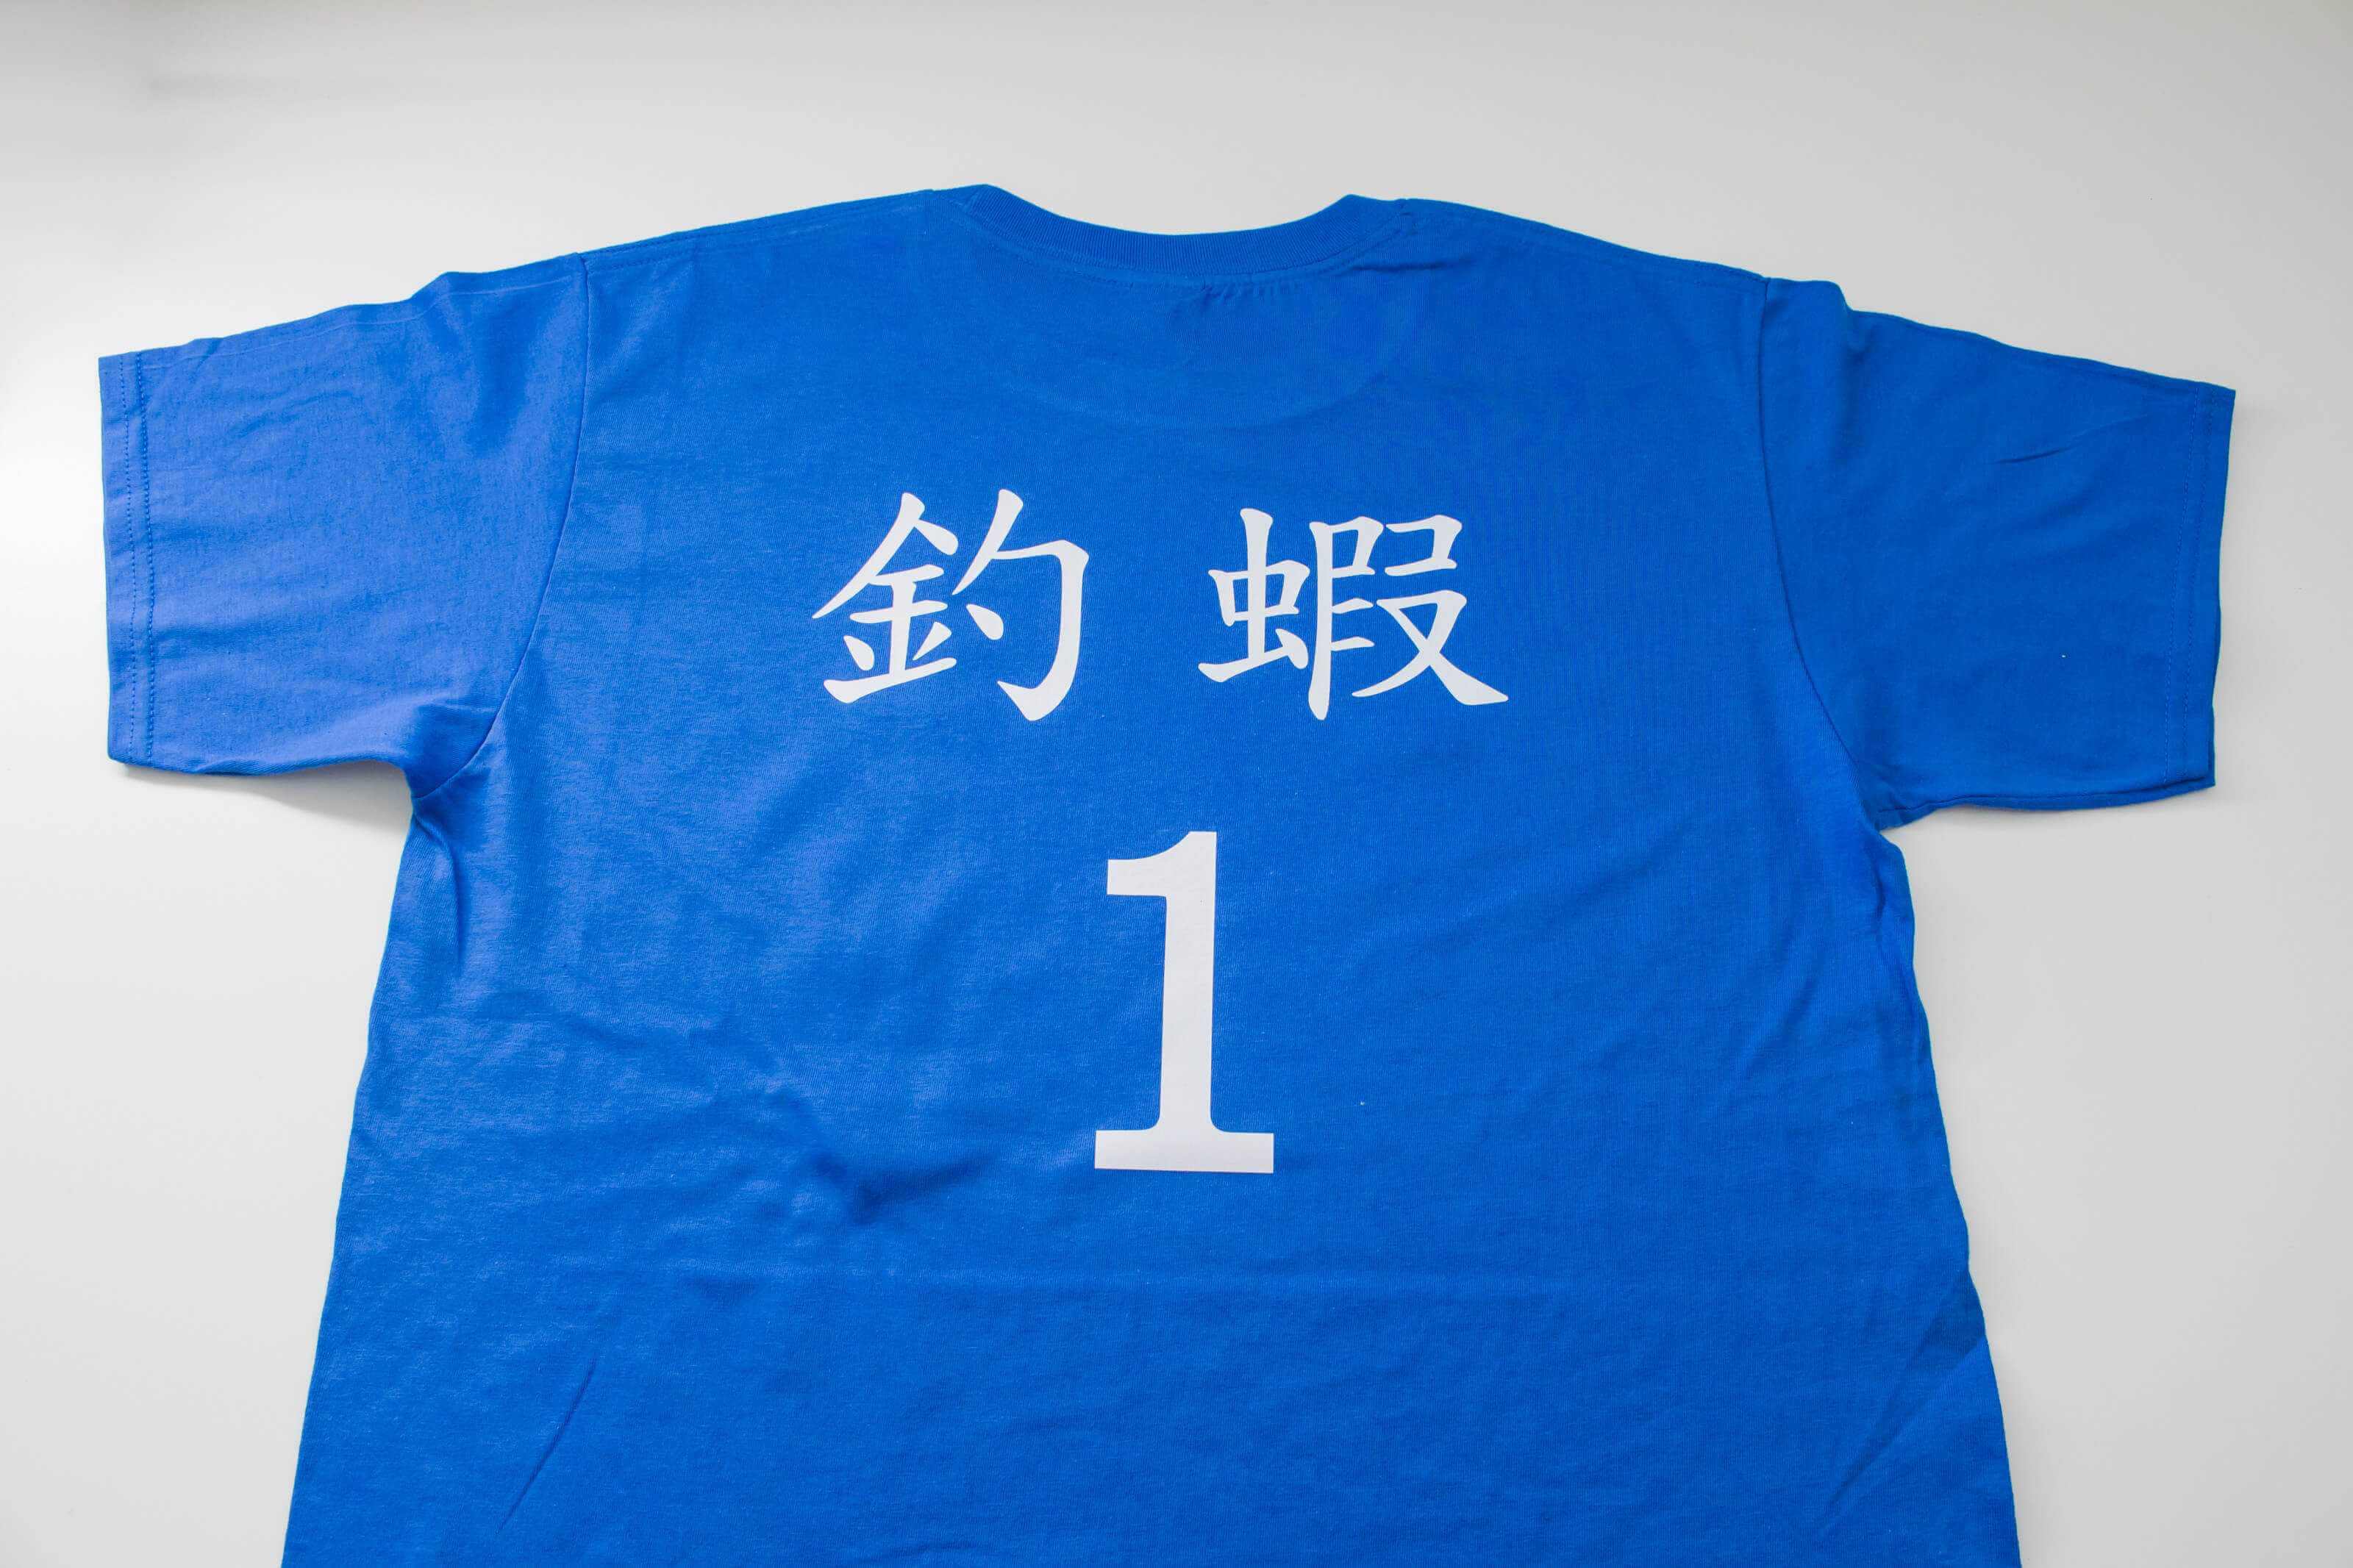 客製化T恤-釣蝦1號 客製T恤的第1張圖(客製化公司制服、班服製作、團體服製作等示意或作品圖)